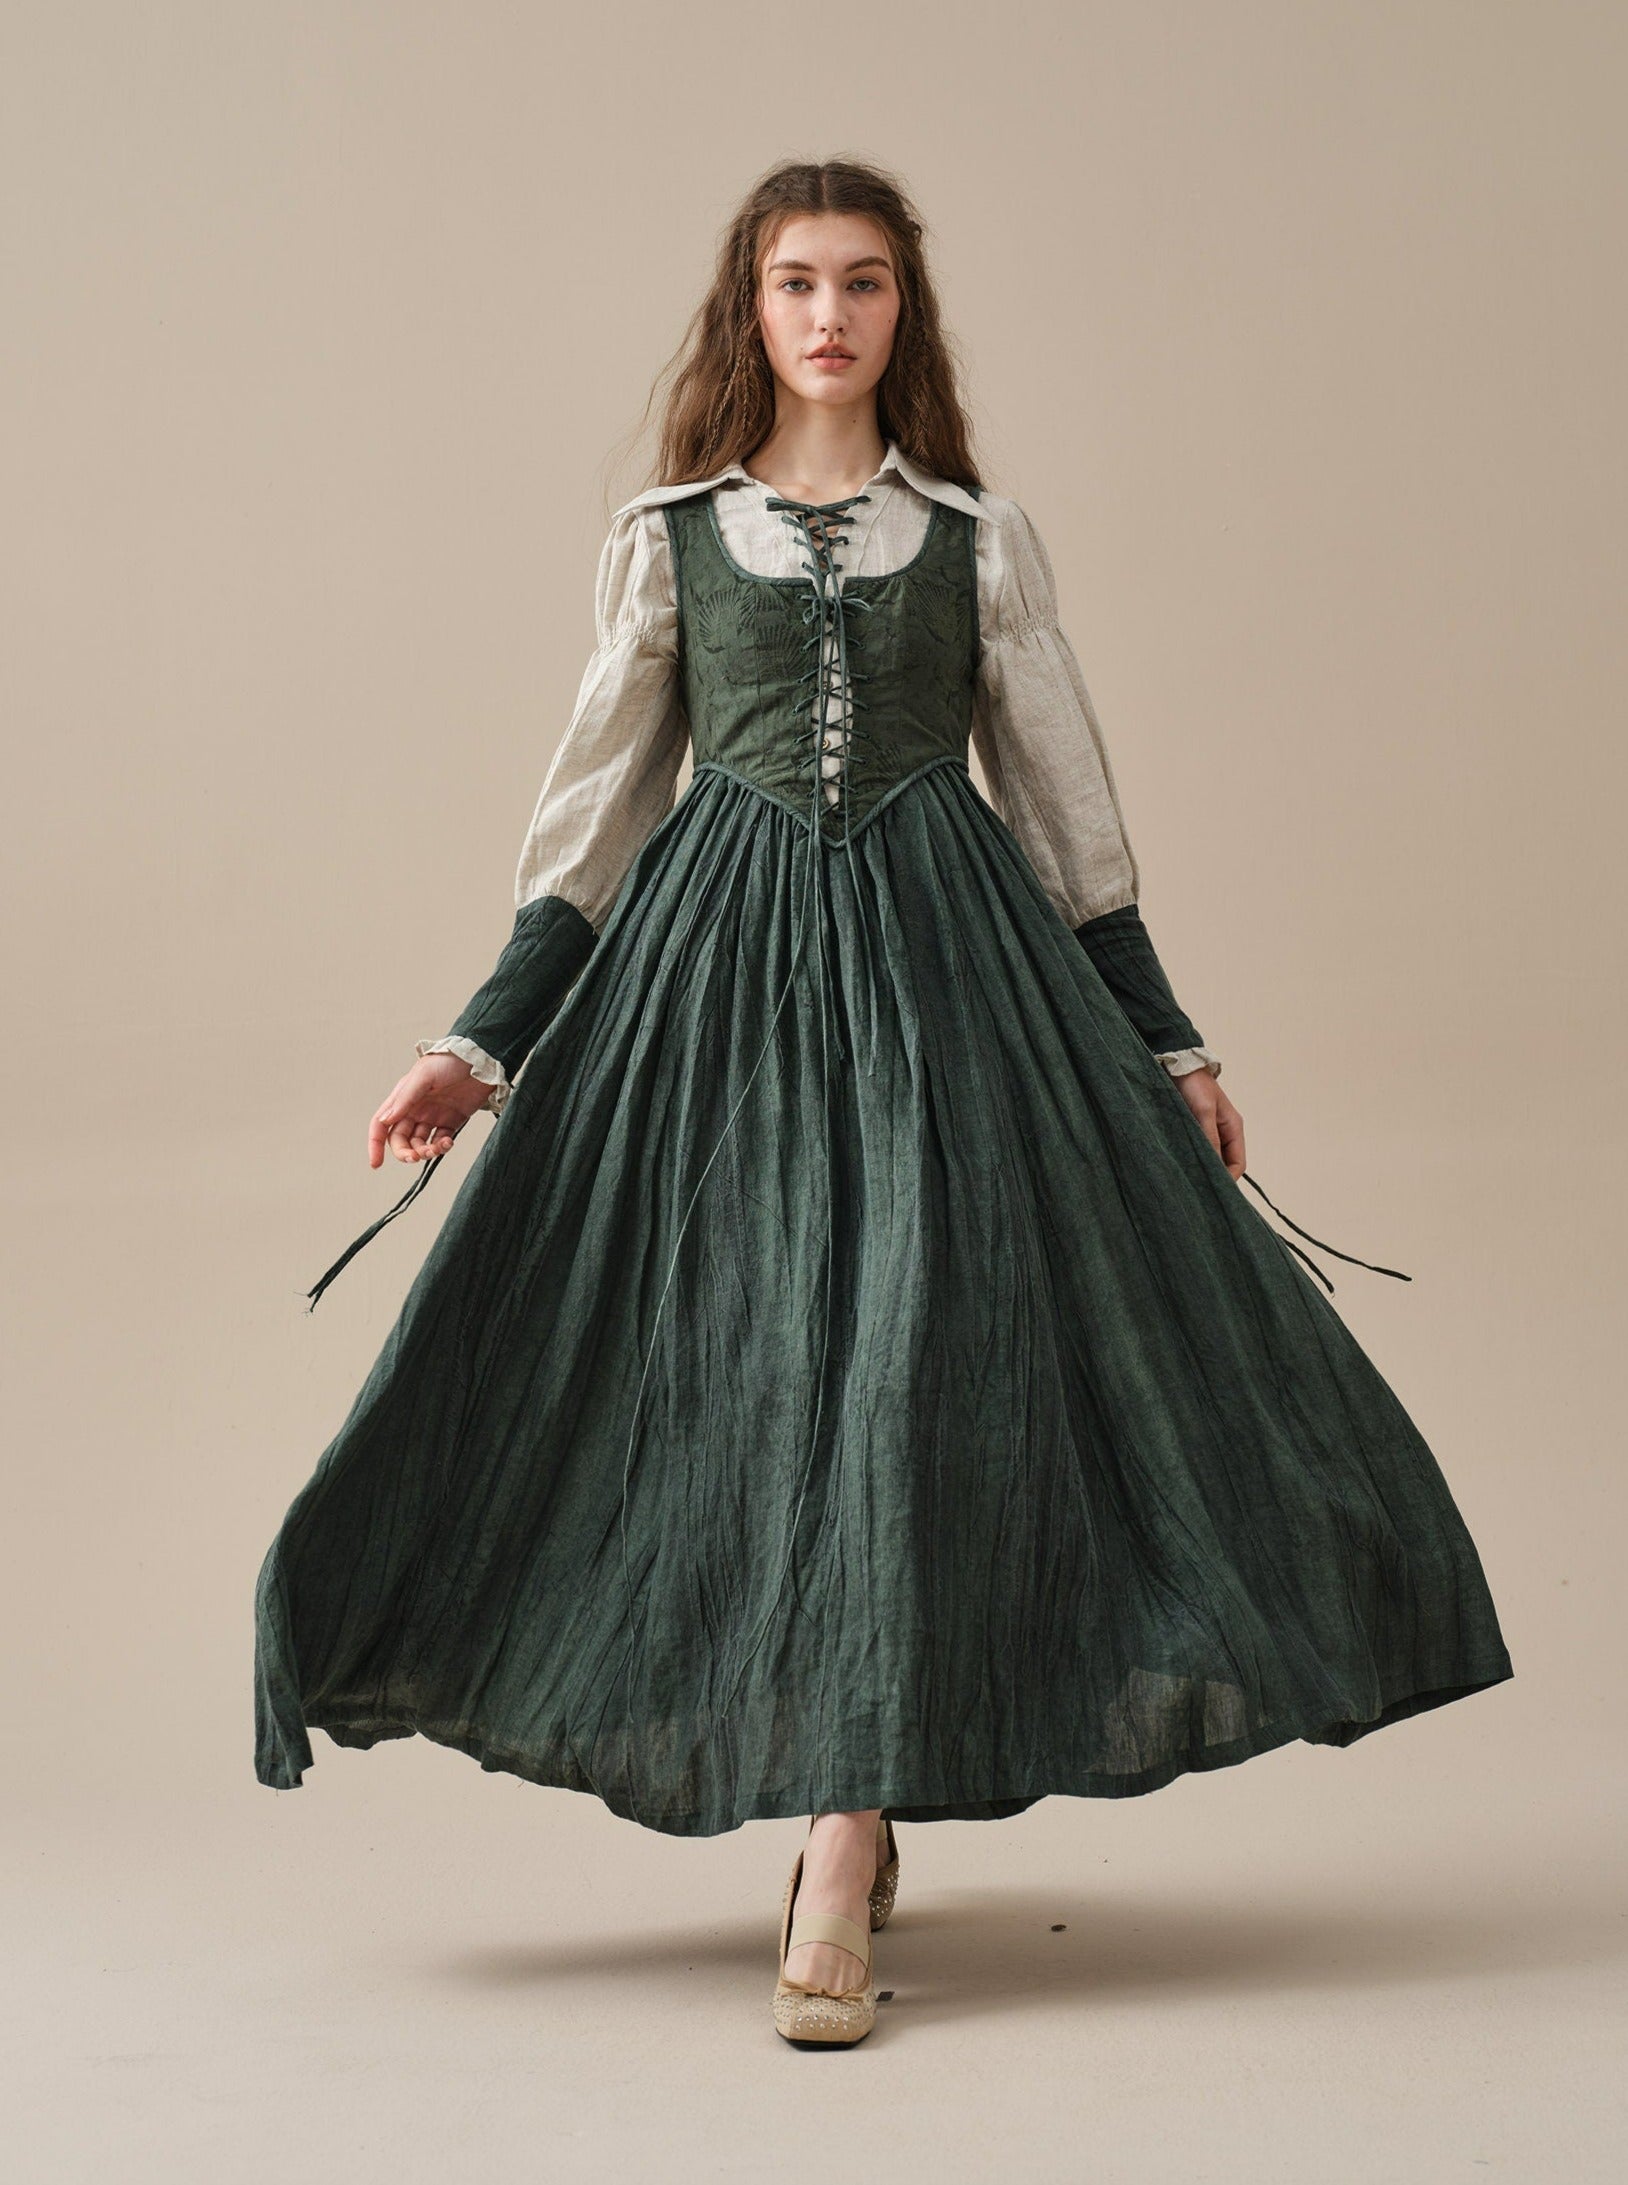 Linen Dress in Grass, Vintage Linen Skirt, Corset Linen Dress, Elegant Dress,  Wedding Dress, Summer Dress Linennaive 